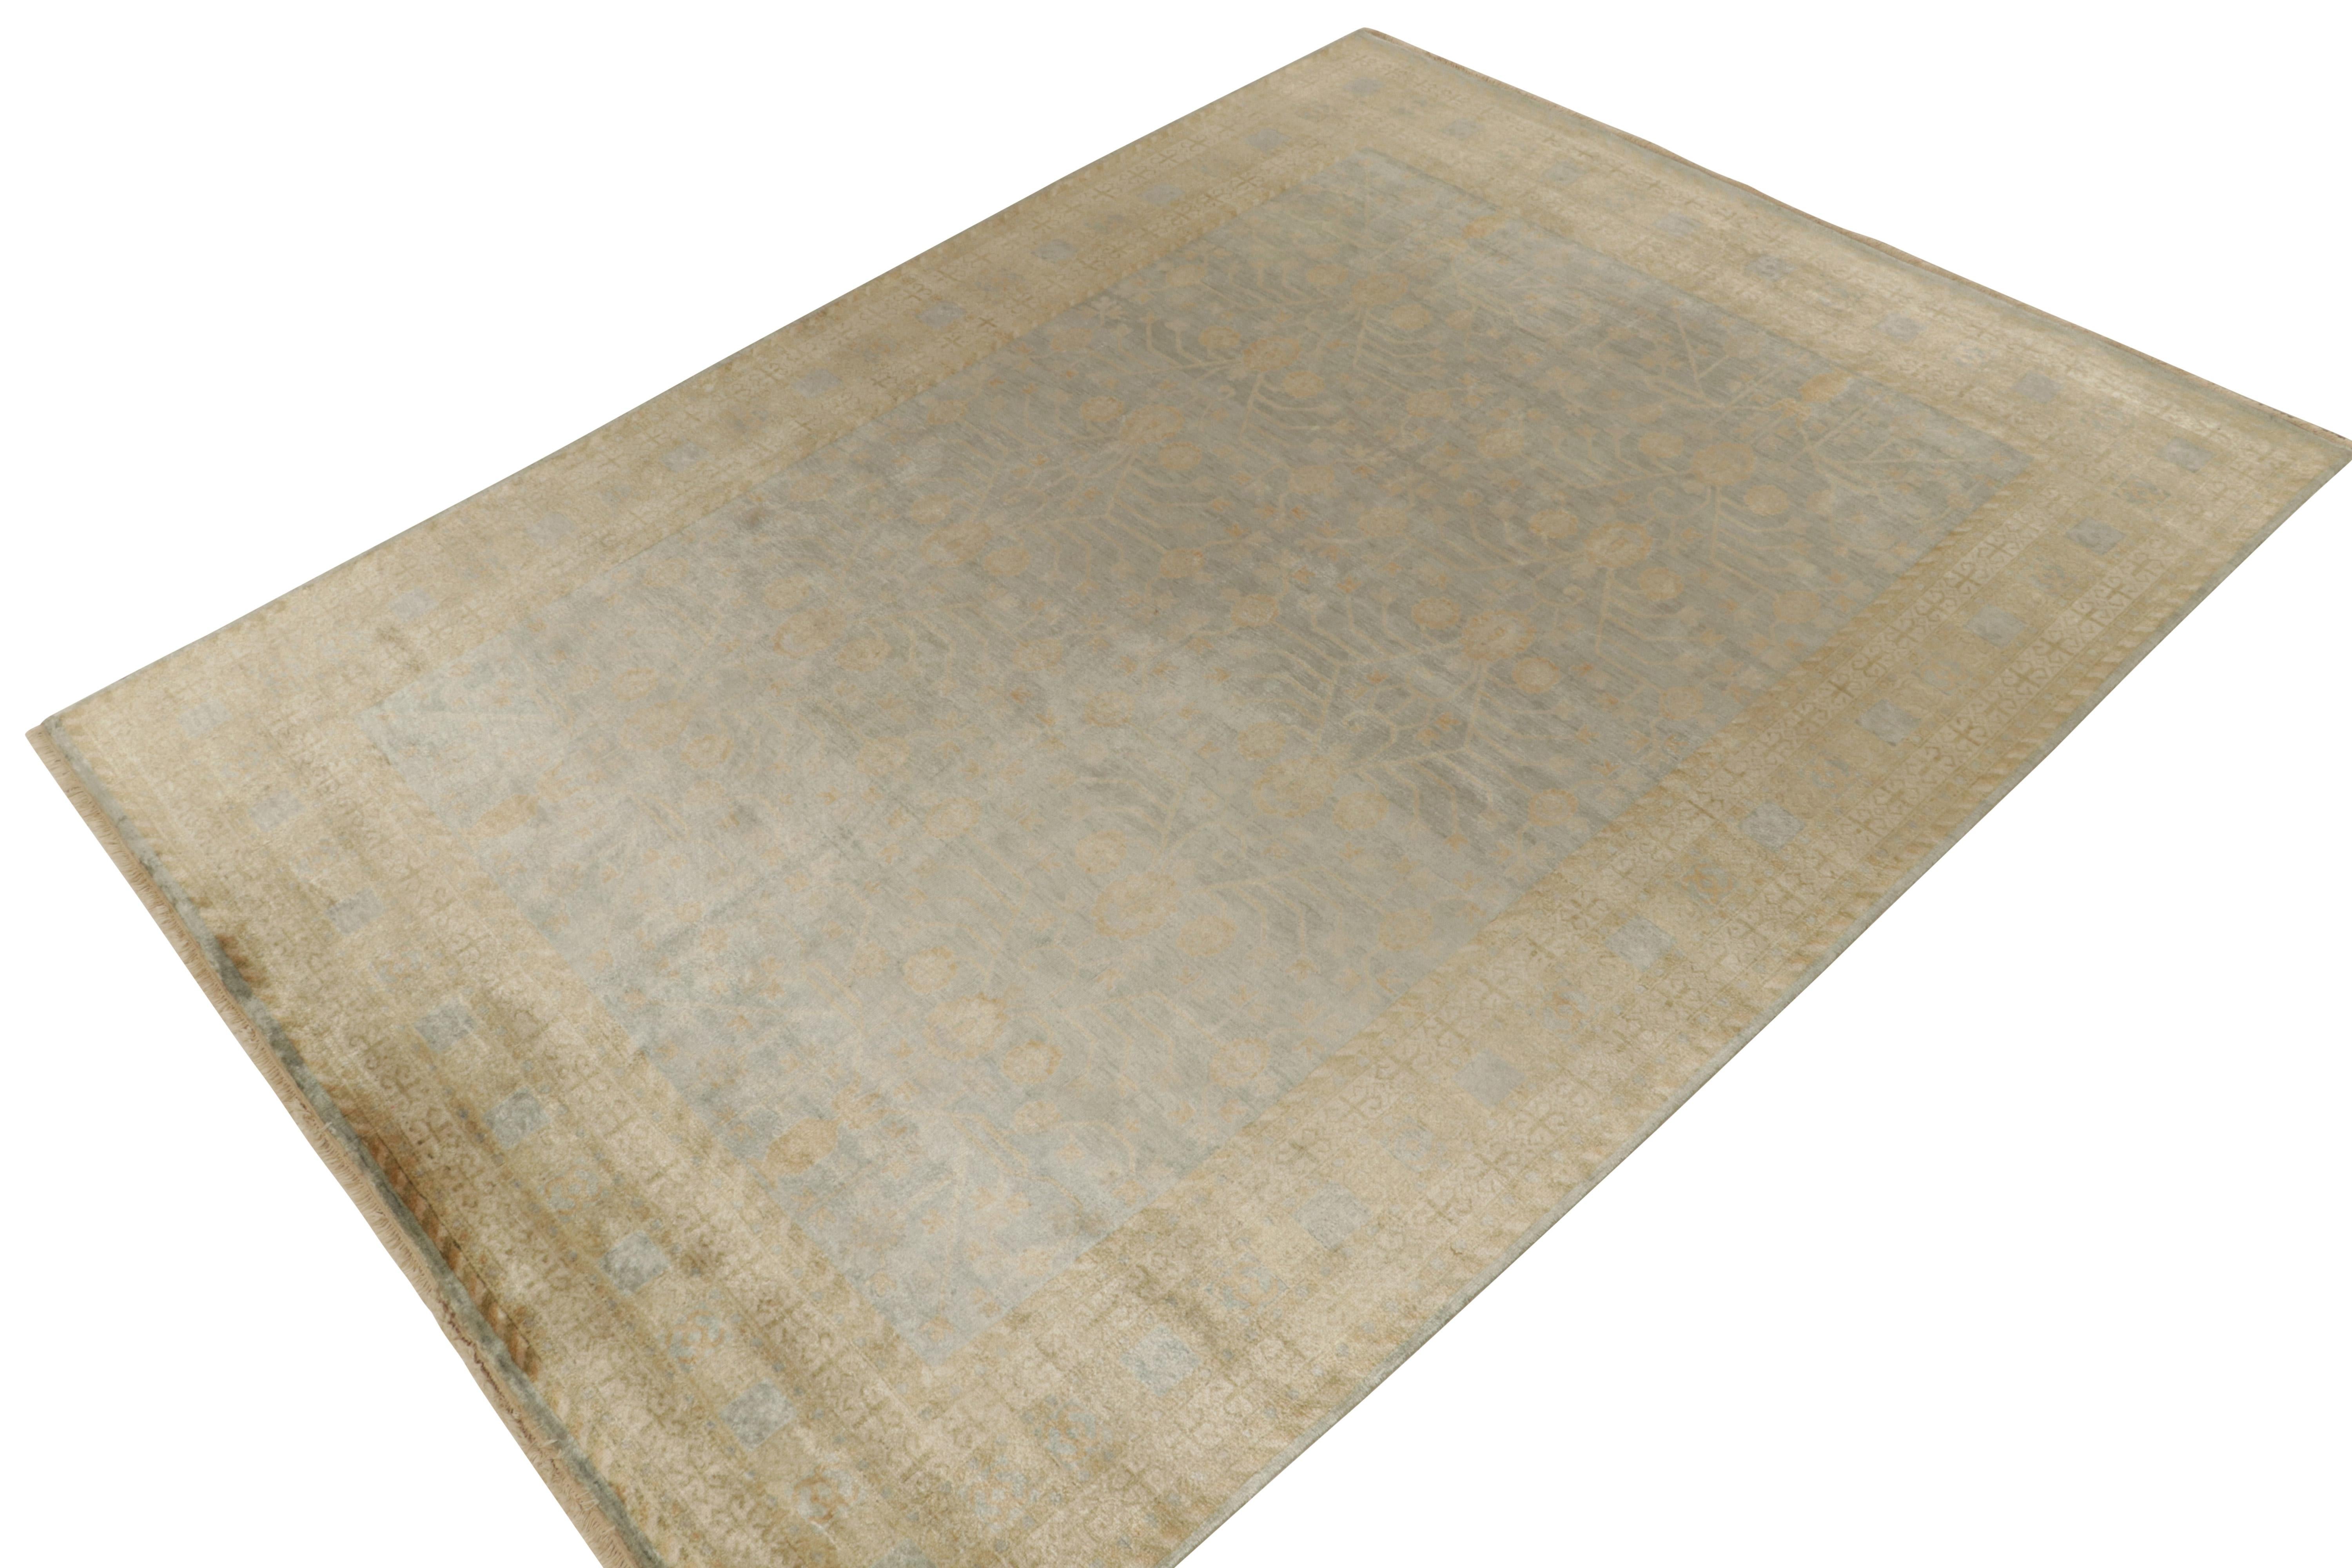 Noué à la main en soie, ce tapis 9x12 de notre collection Modern Classics est une ode aux styles de tapis anciens Khotan-Samarkand. 

Sur le design : La pièce réimagine cette provenance à une échelle plus gracieuse et dans des teintes luxueuses et